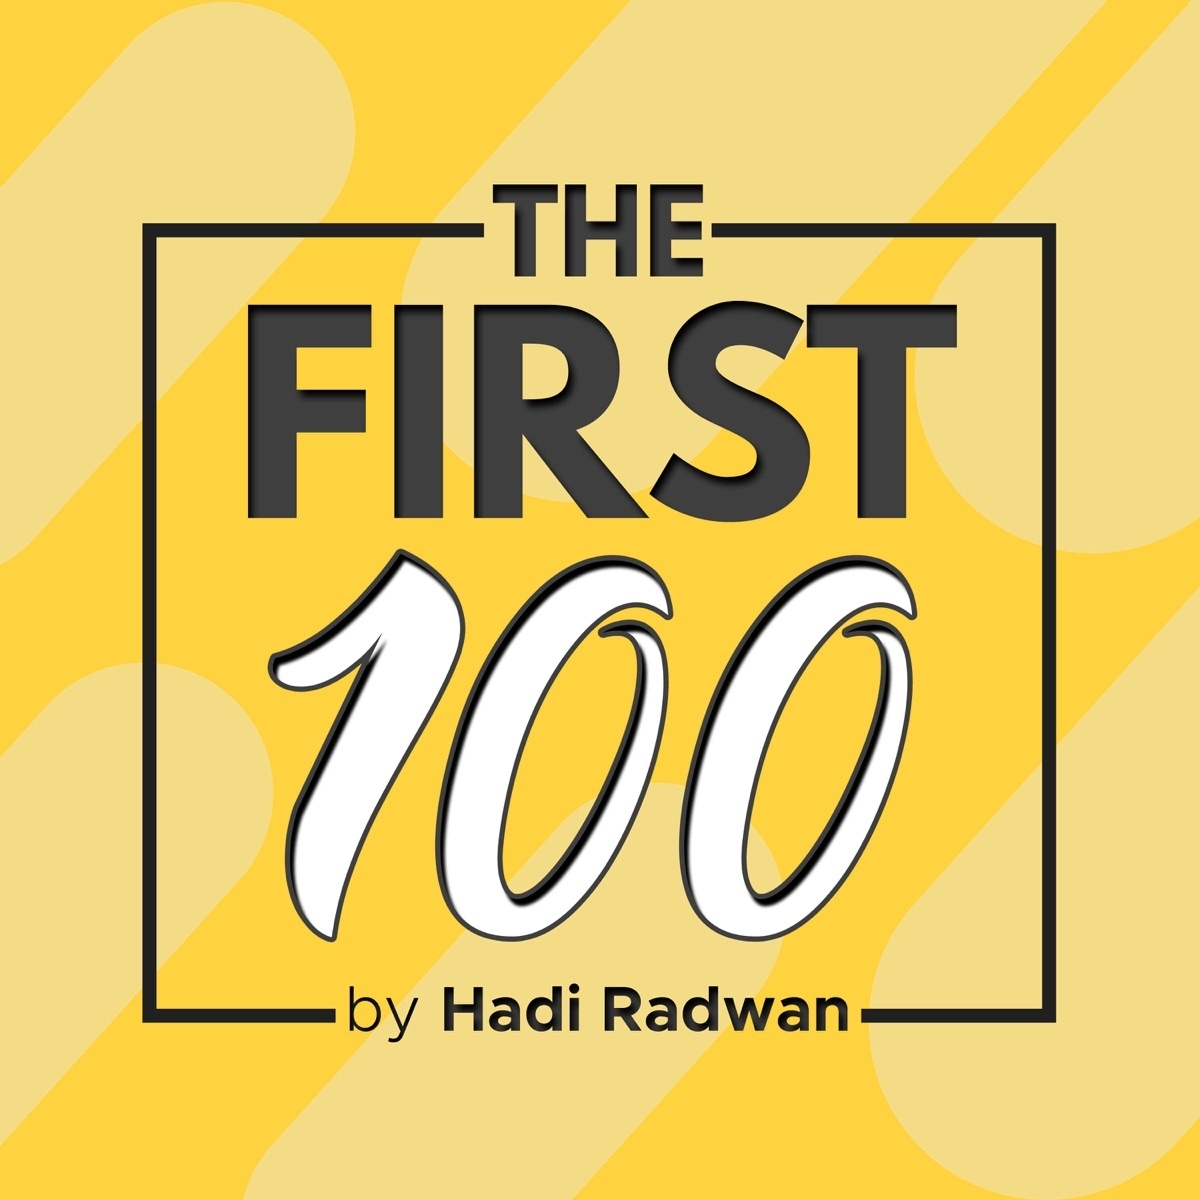 The First 100 with Hadi Radwan 